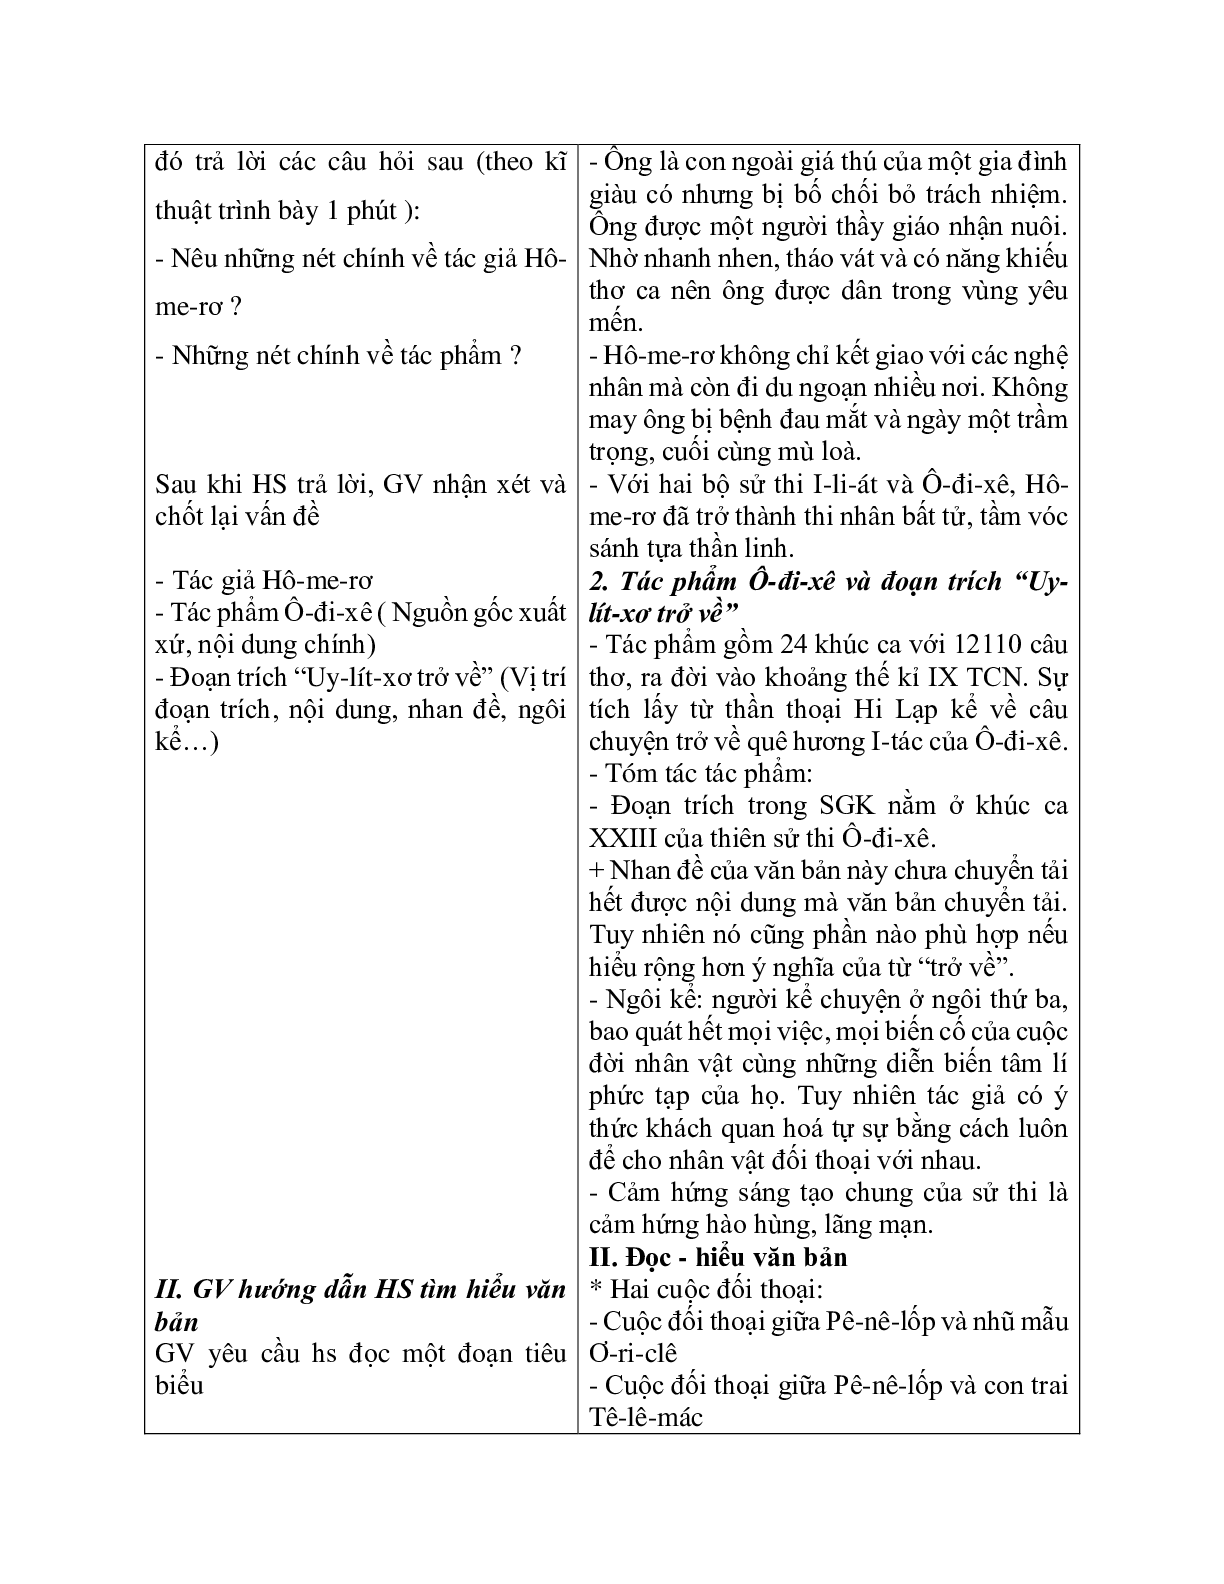 Giáo án ngữ văn lớp 10 Tiết 22, 23: Uy-Lit-xơ trở về (trang 3)